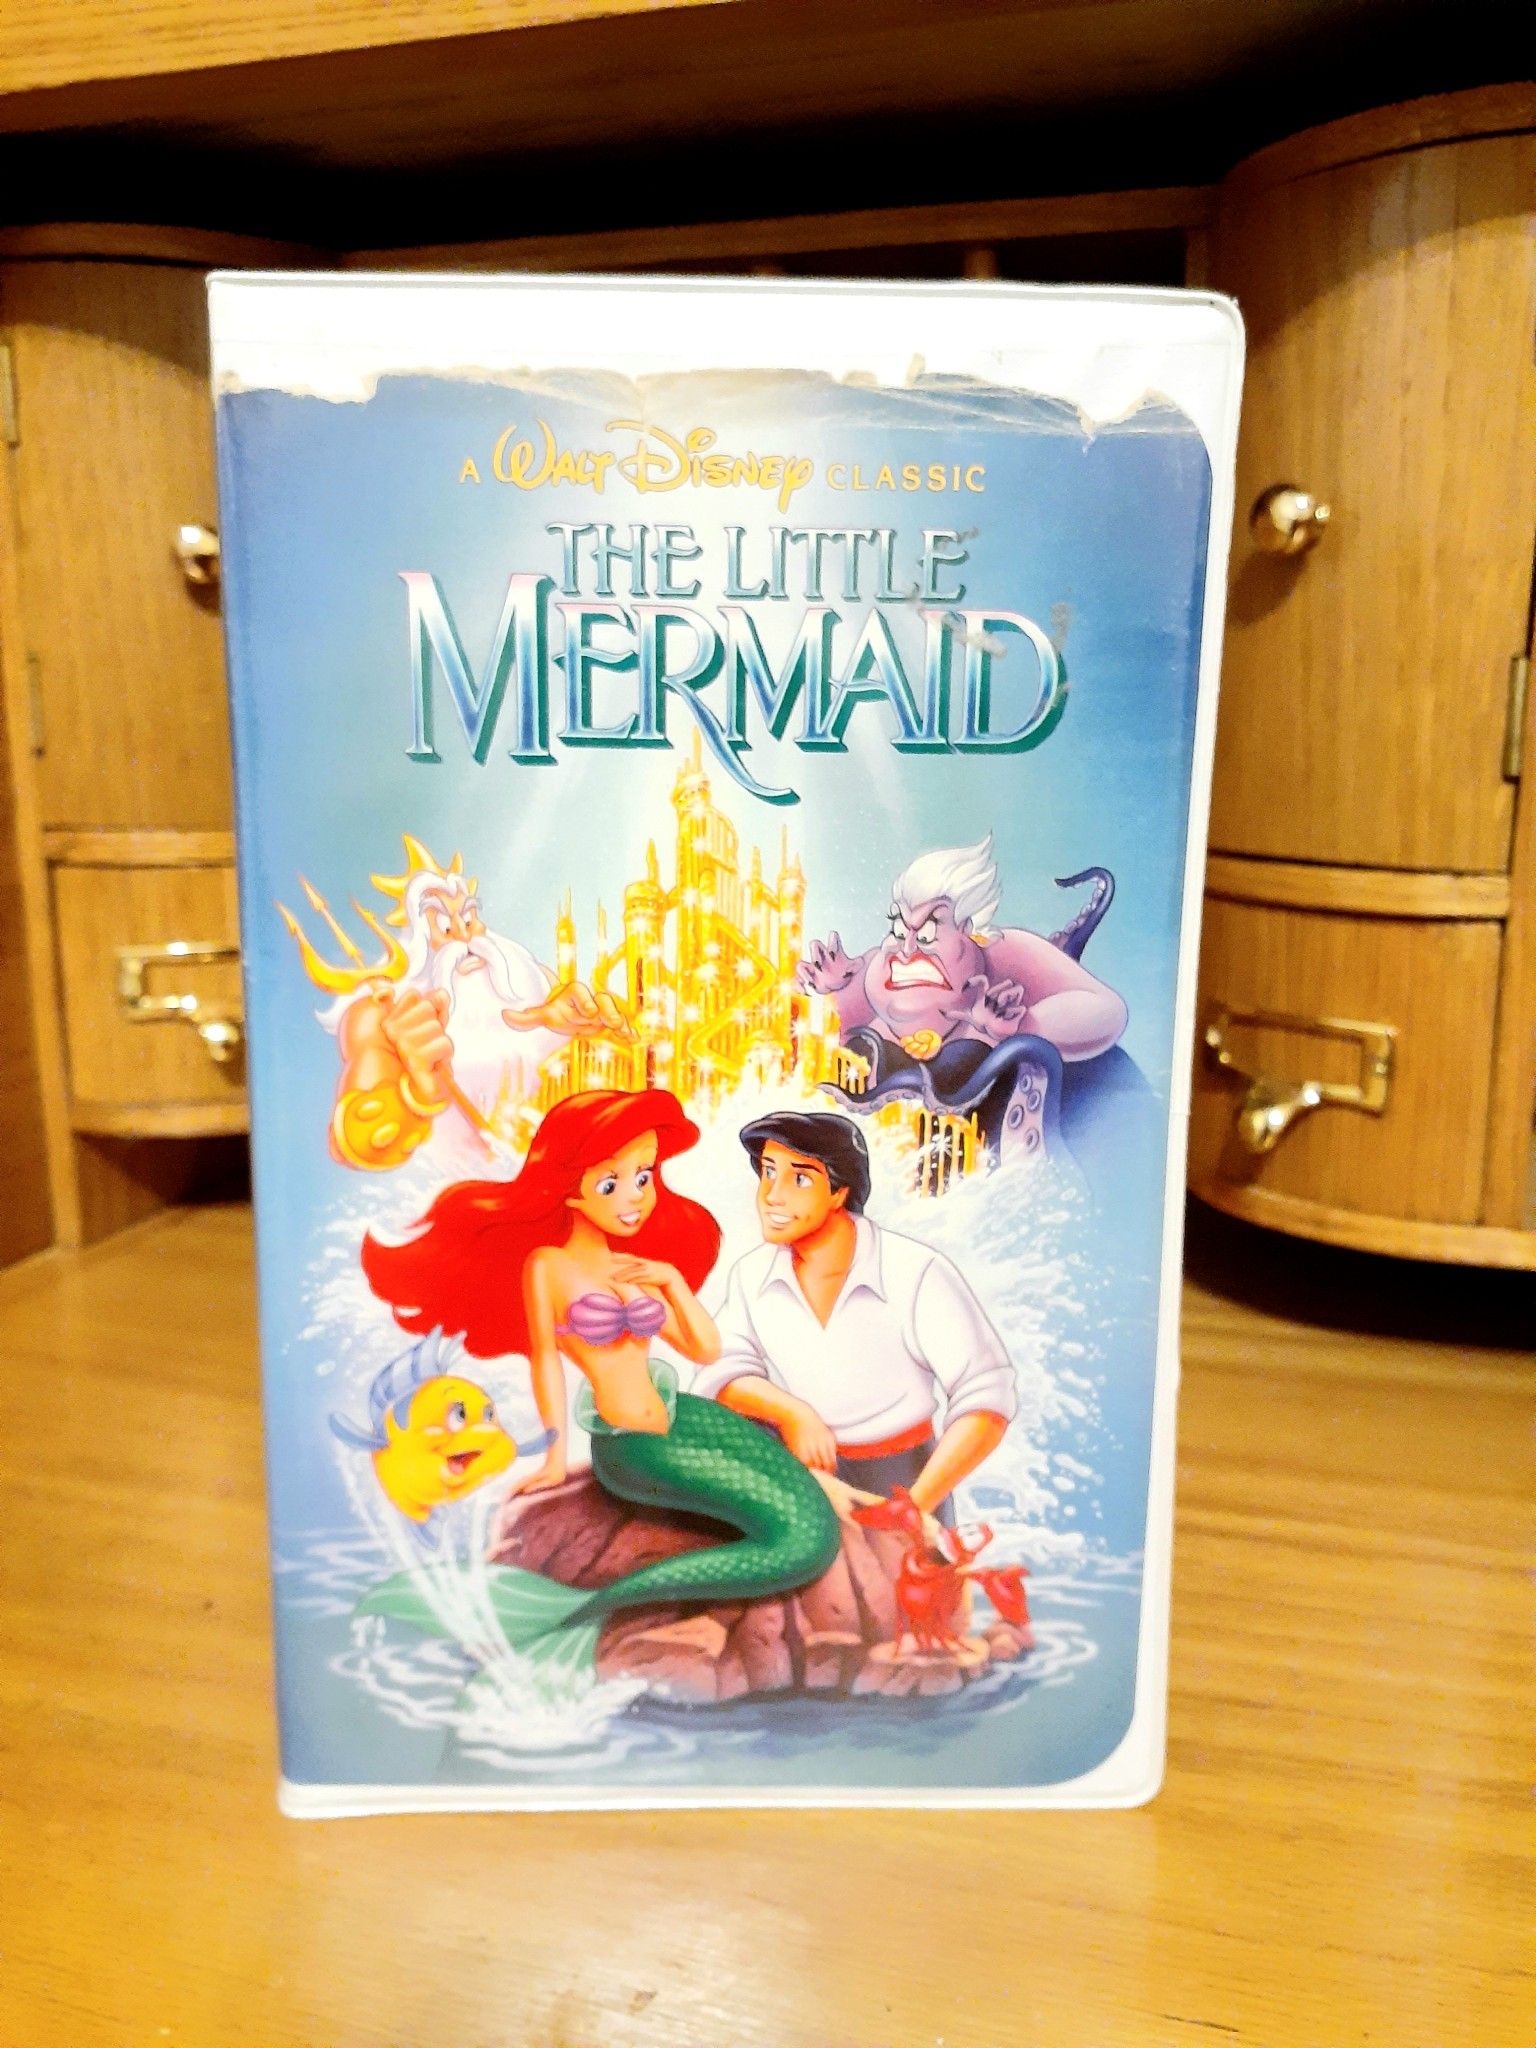 Disney's Black Diamond Little Mermaid VHS movie (Banned Cover Art)